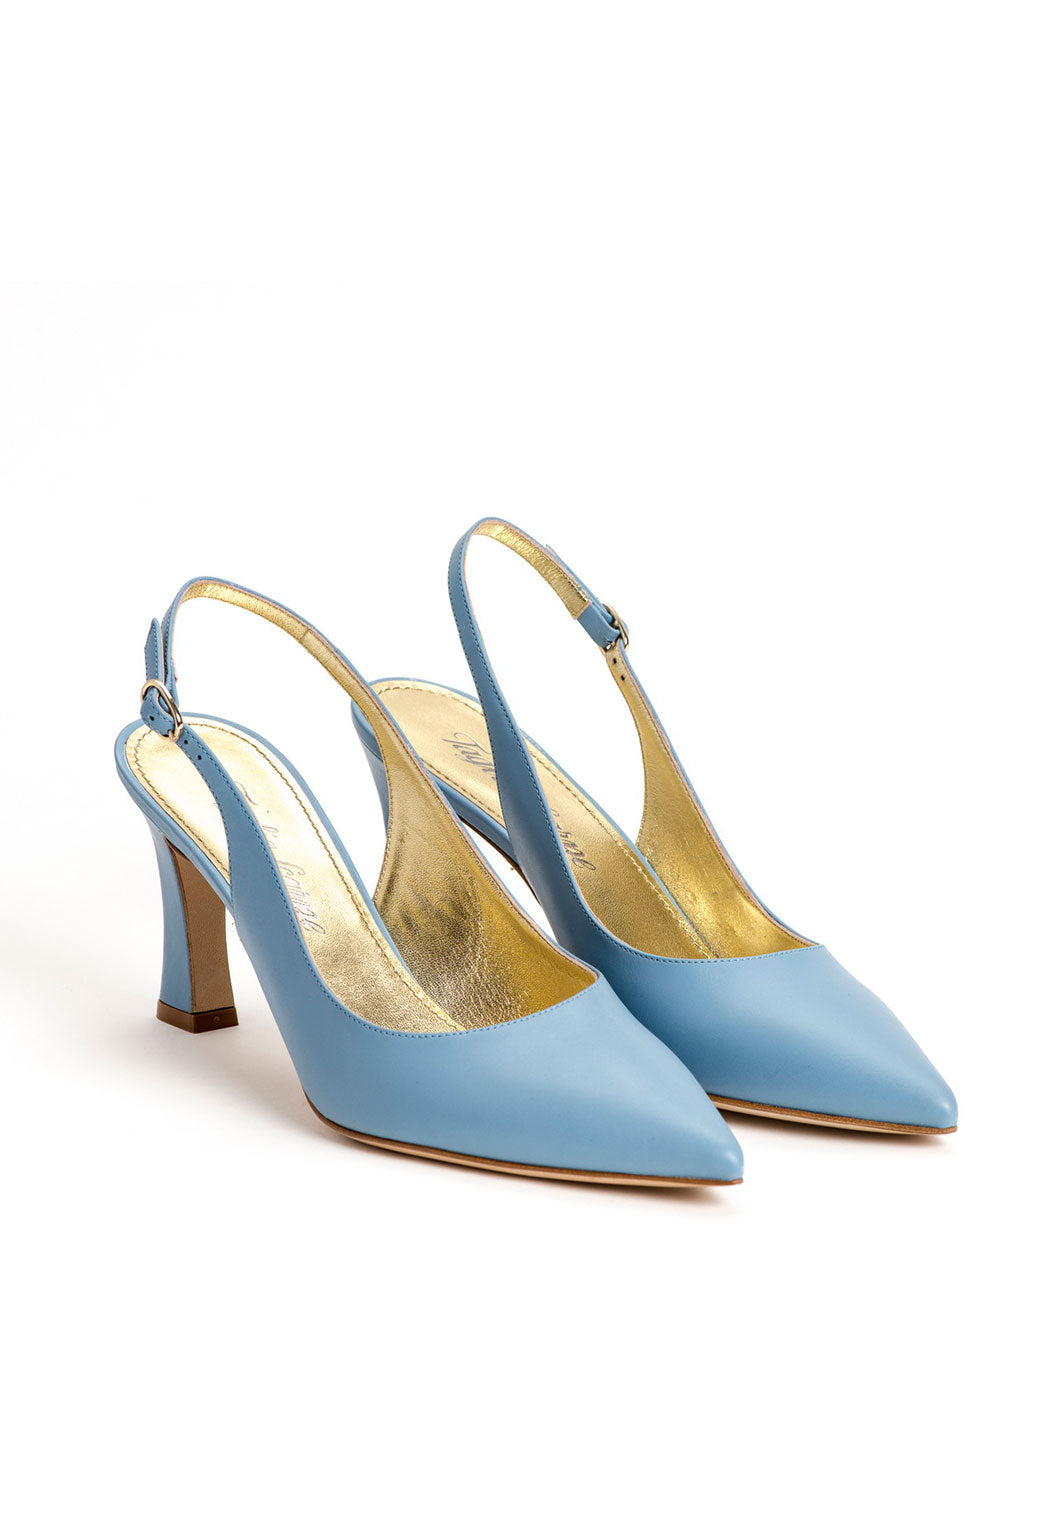 Luxus Schuhe für Damen aus blauem Kalbsleder mit verstellbarem Riemchen an der Ferse. Elegante Damenschuhe von vorne fotografiert. Offene Pumps in blau.